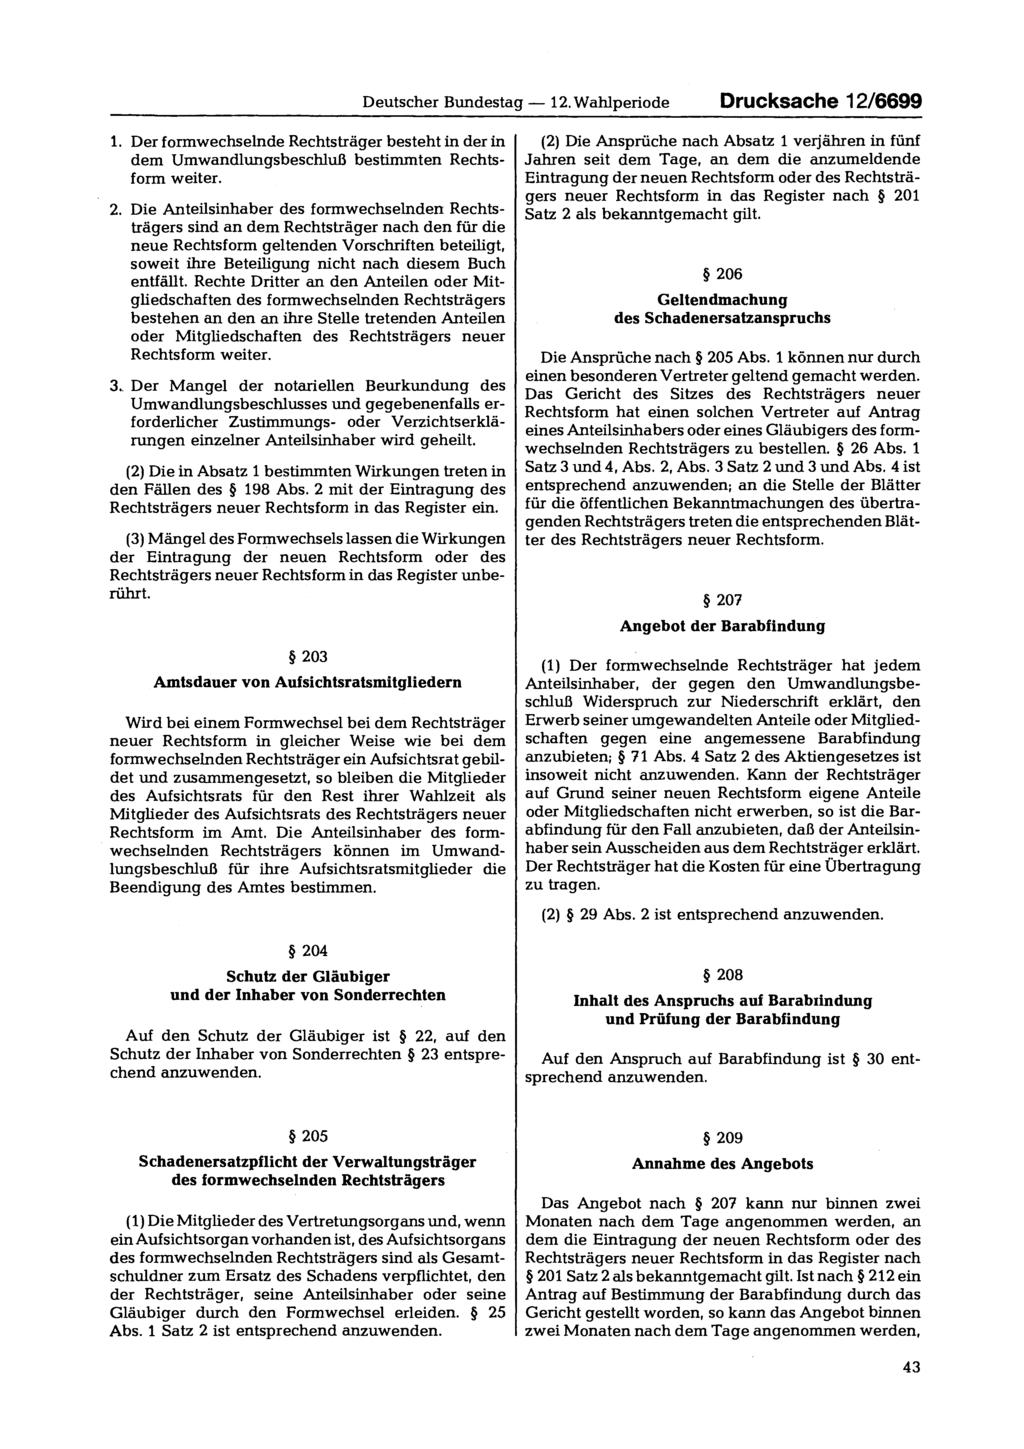 Deutscher Bundestag 12. Wahlperiode Drucksache 12/6699 1. Der formwechselnde Rechtsträger besteht in der in dem Umwandlungsbeschluß bestimmten Rechtsform weiter. 2.